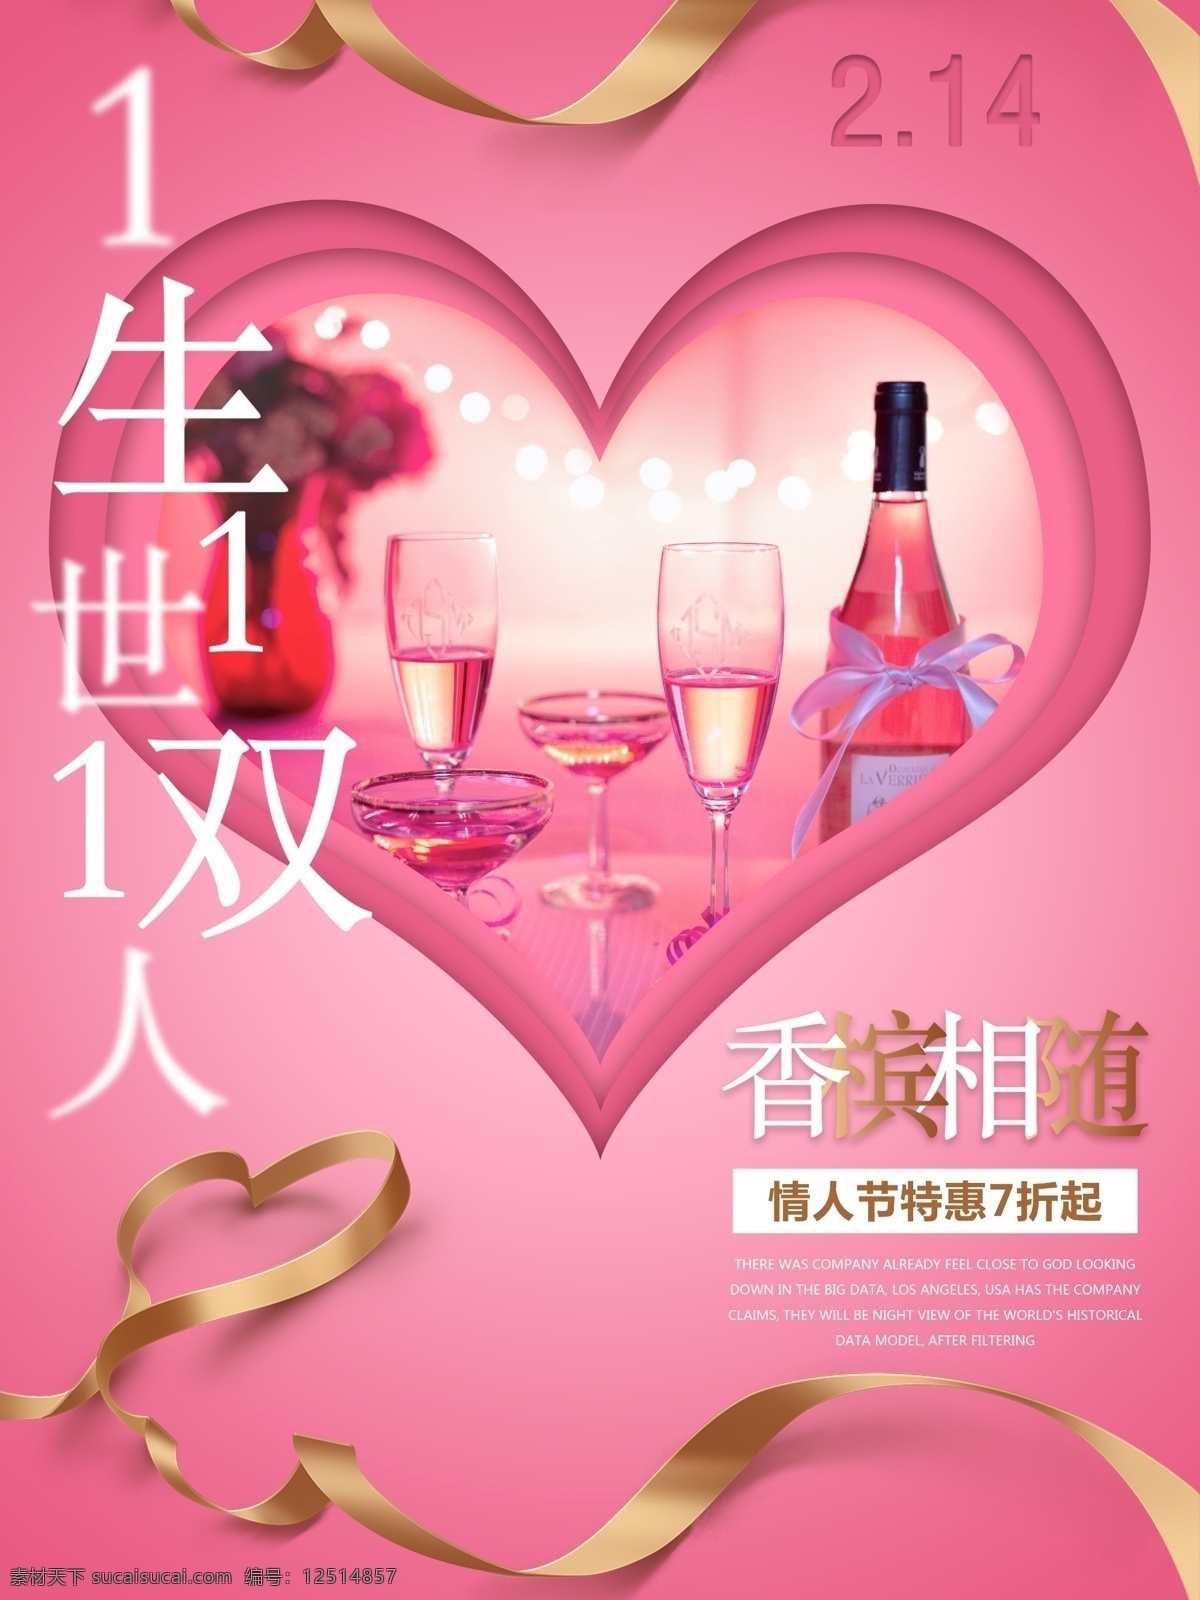 紫 粉色 渐变 浪漫 情人节 香槟 促销 海报 2.14 2月14日 丝带 唯美 一生一世 双人 紫粉色渐变